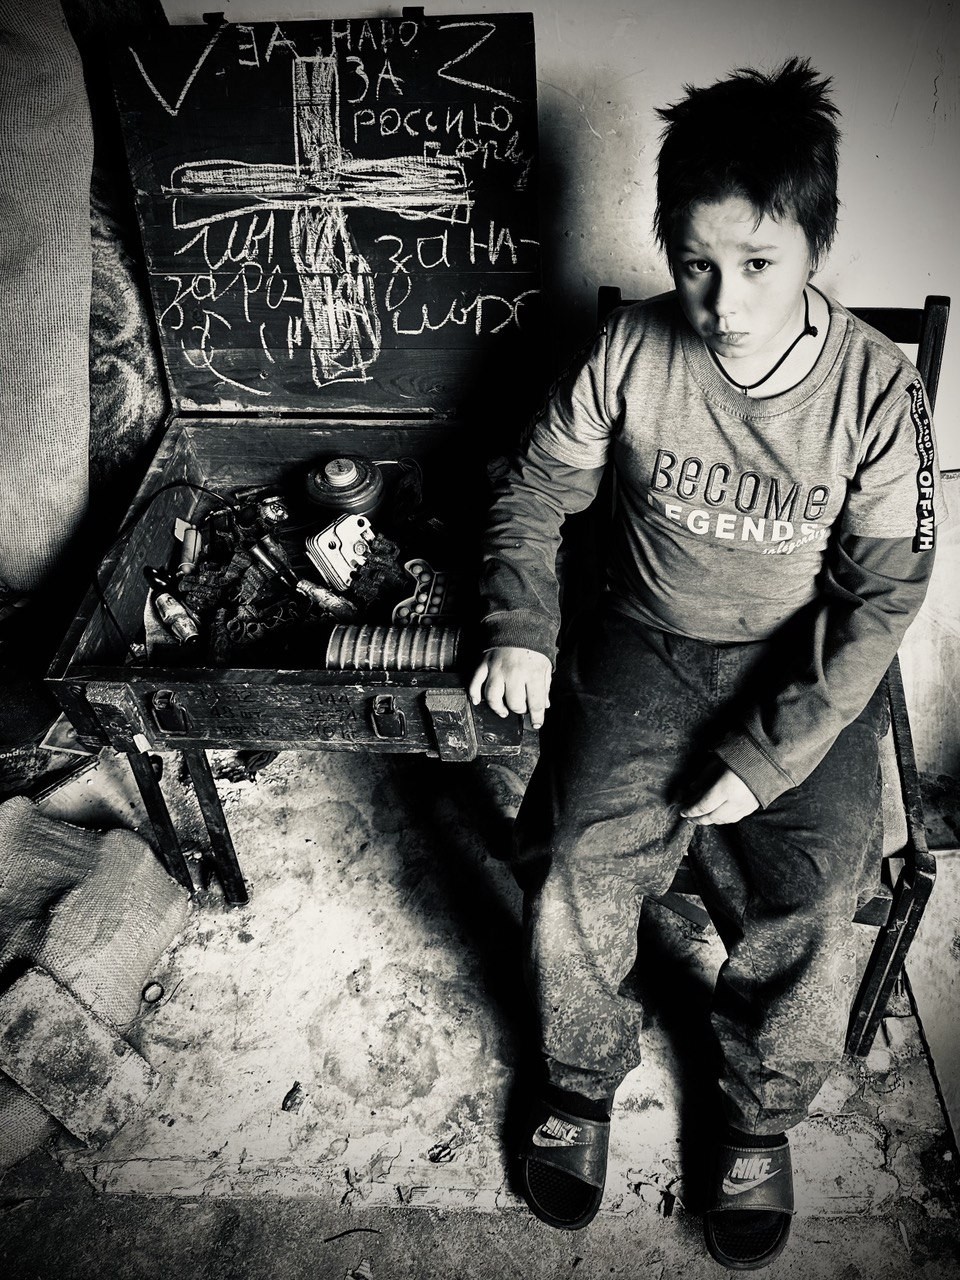 Criança ucraniana perdeu o pai no bombardeio e vive com irmã e a mãe em escola abandonada — Foto: Ekaterina Diachkova